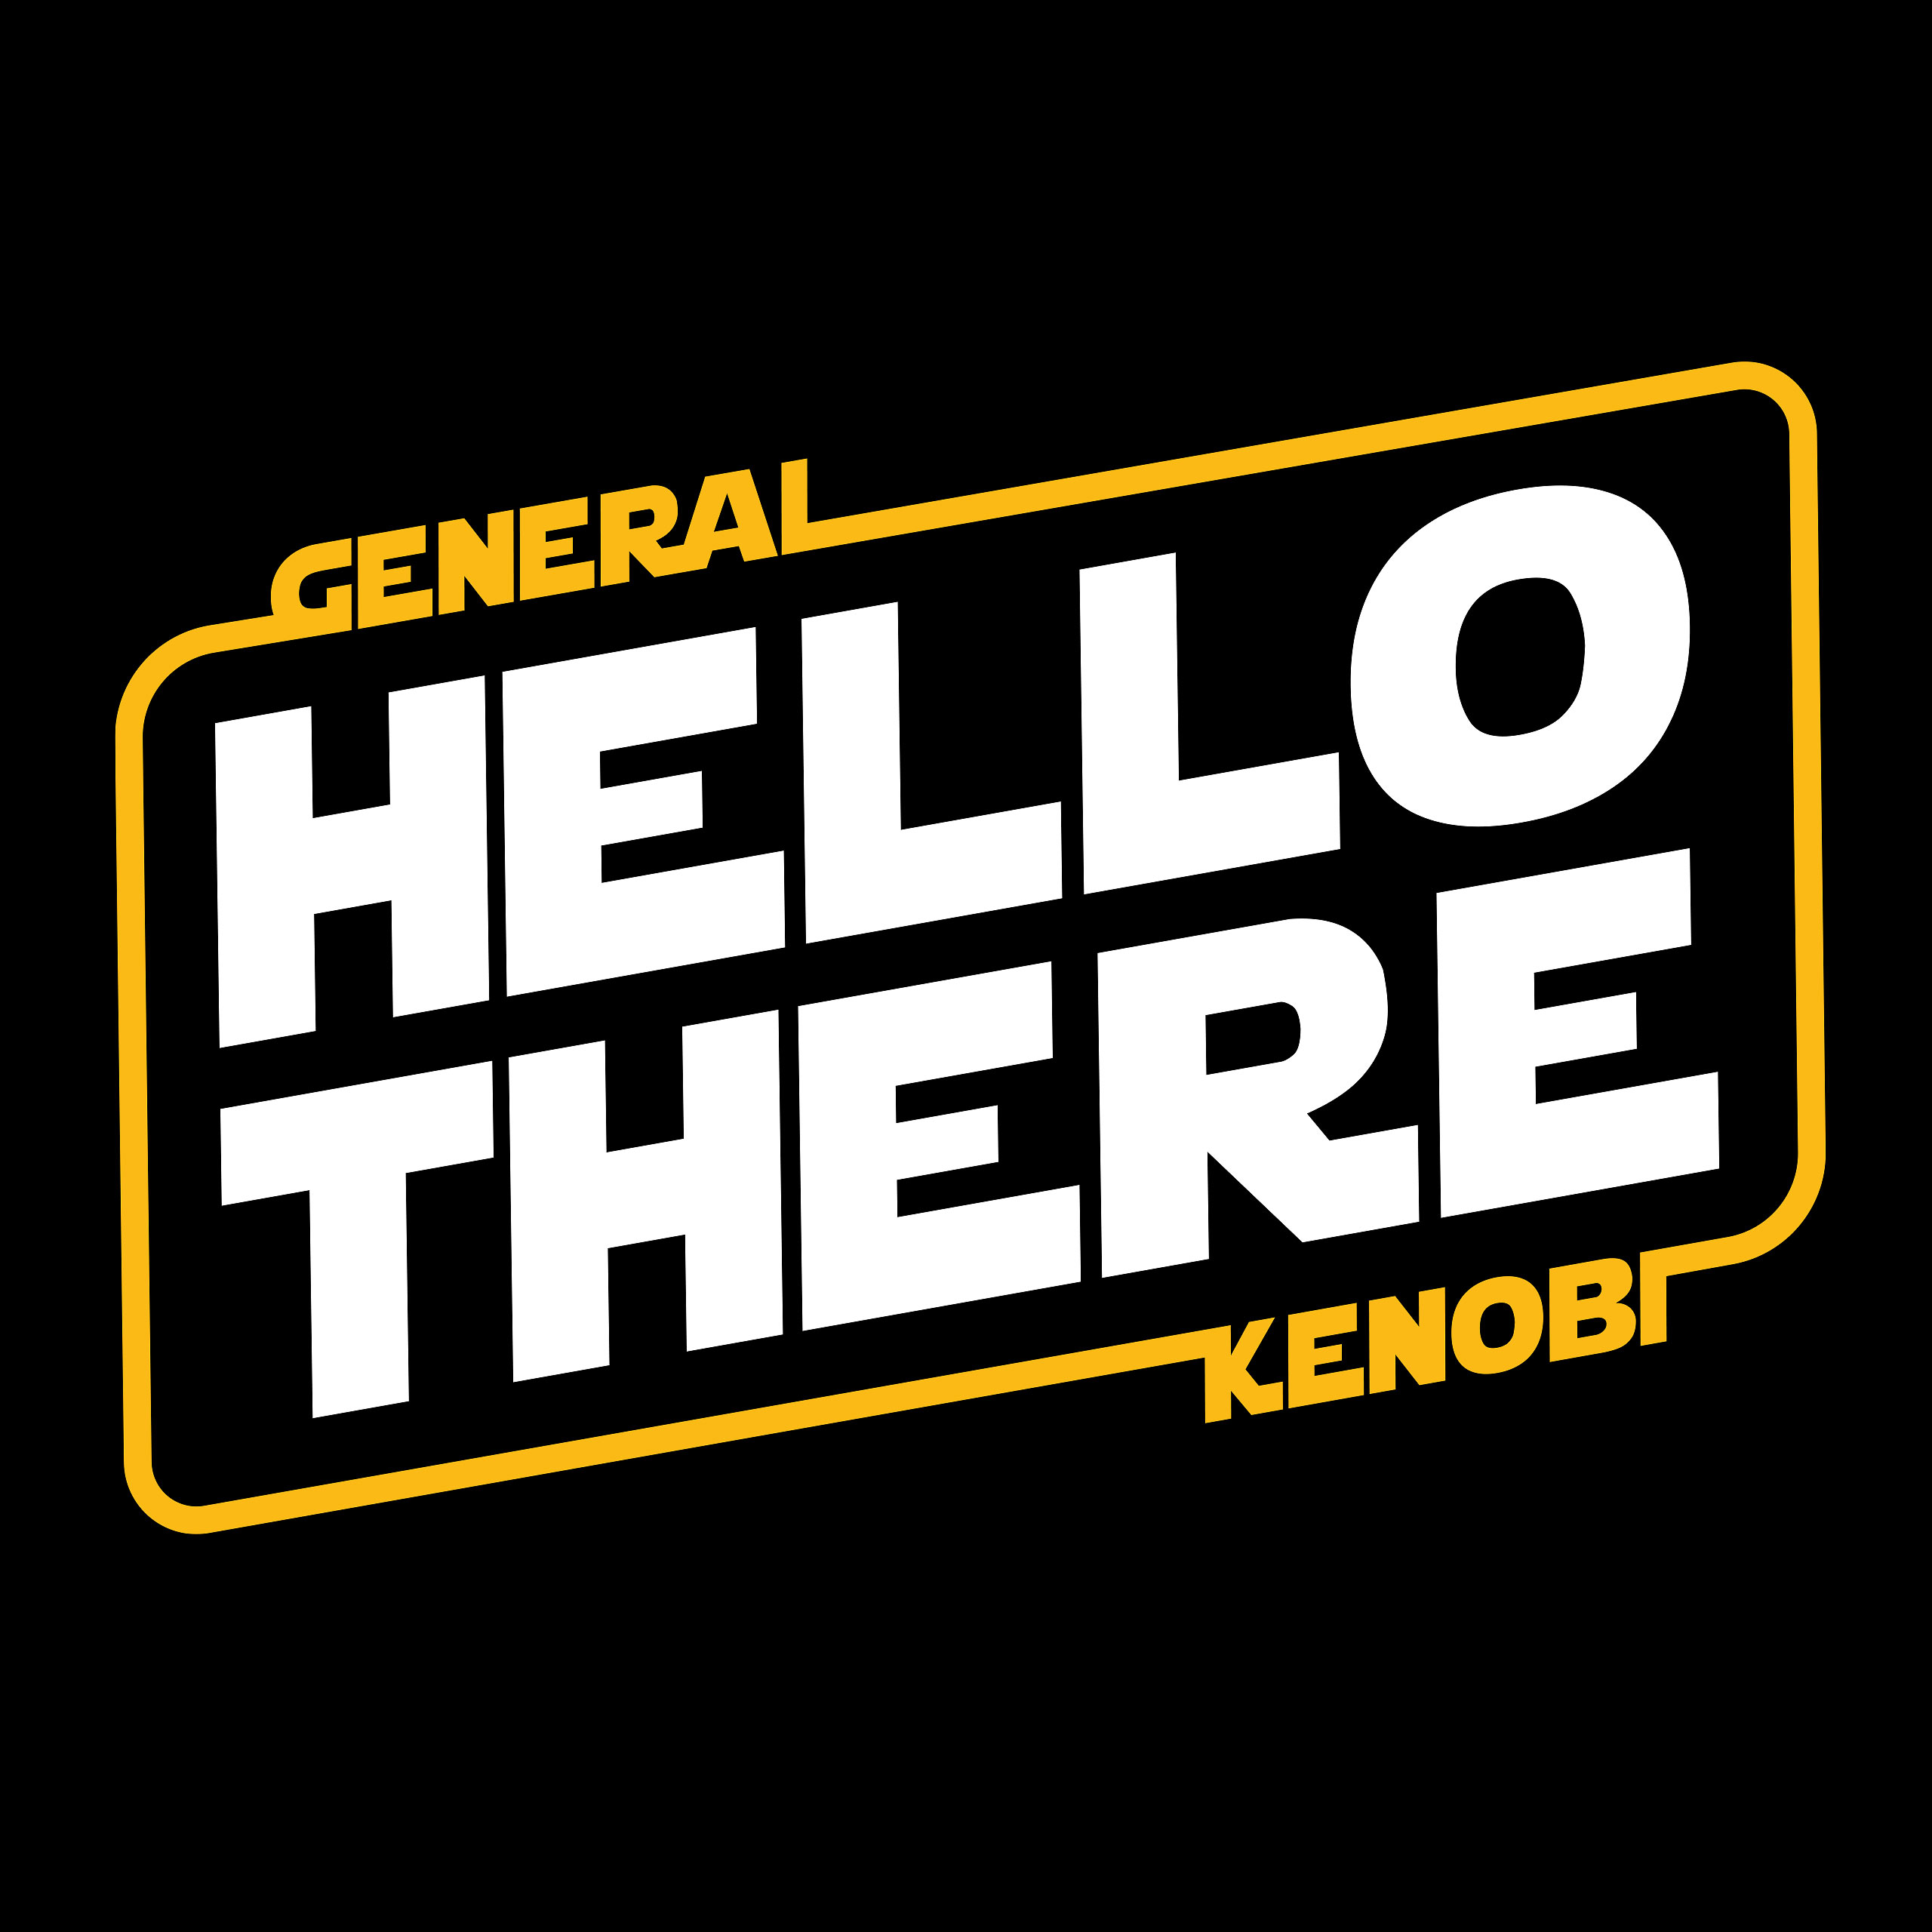 General Kenobi Hello There T-Shirt voor Star Wars Fans zwart